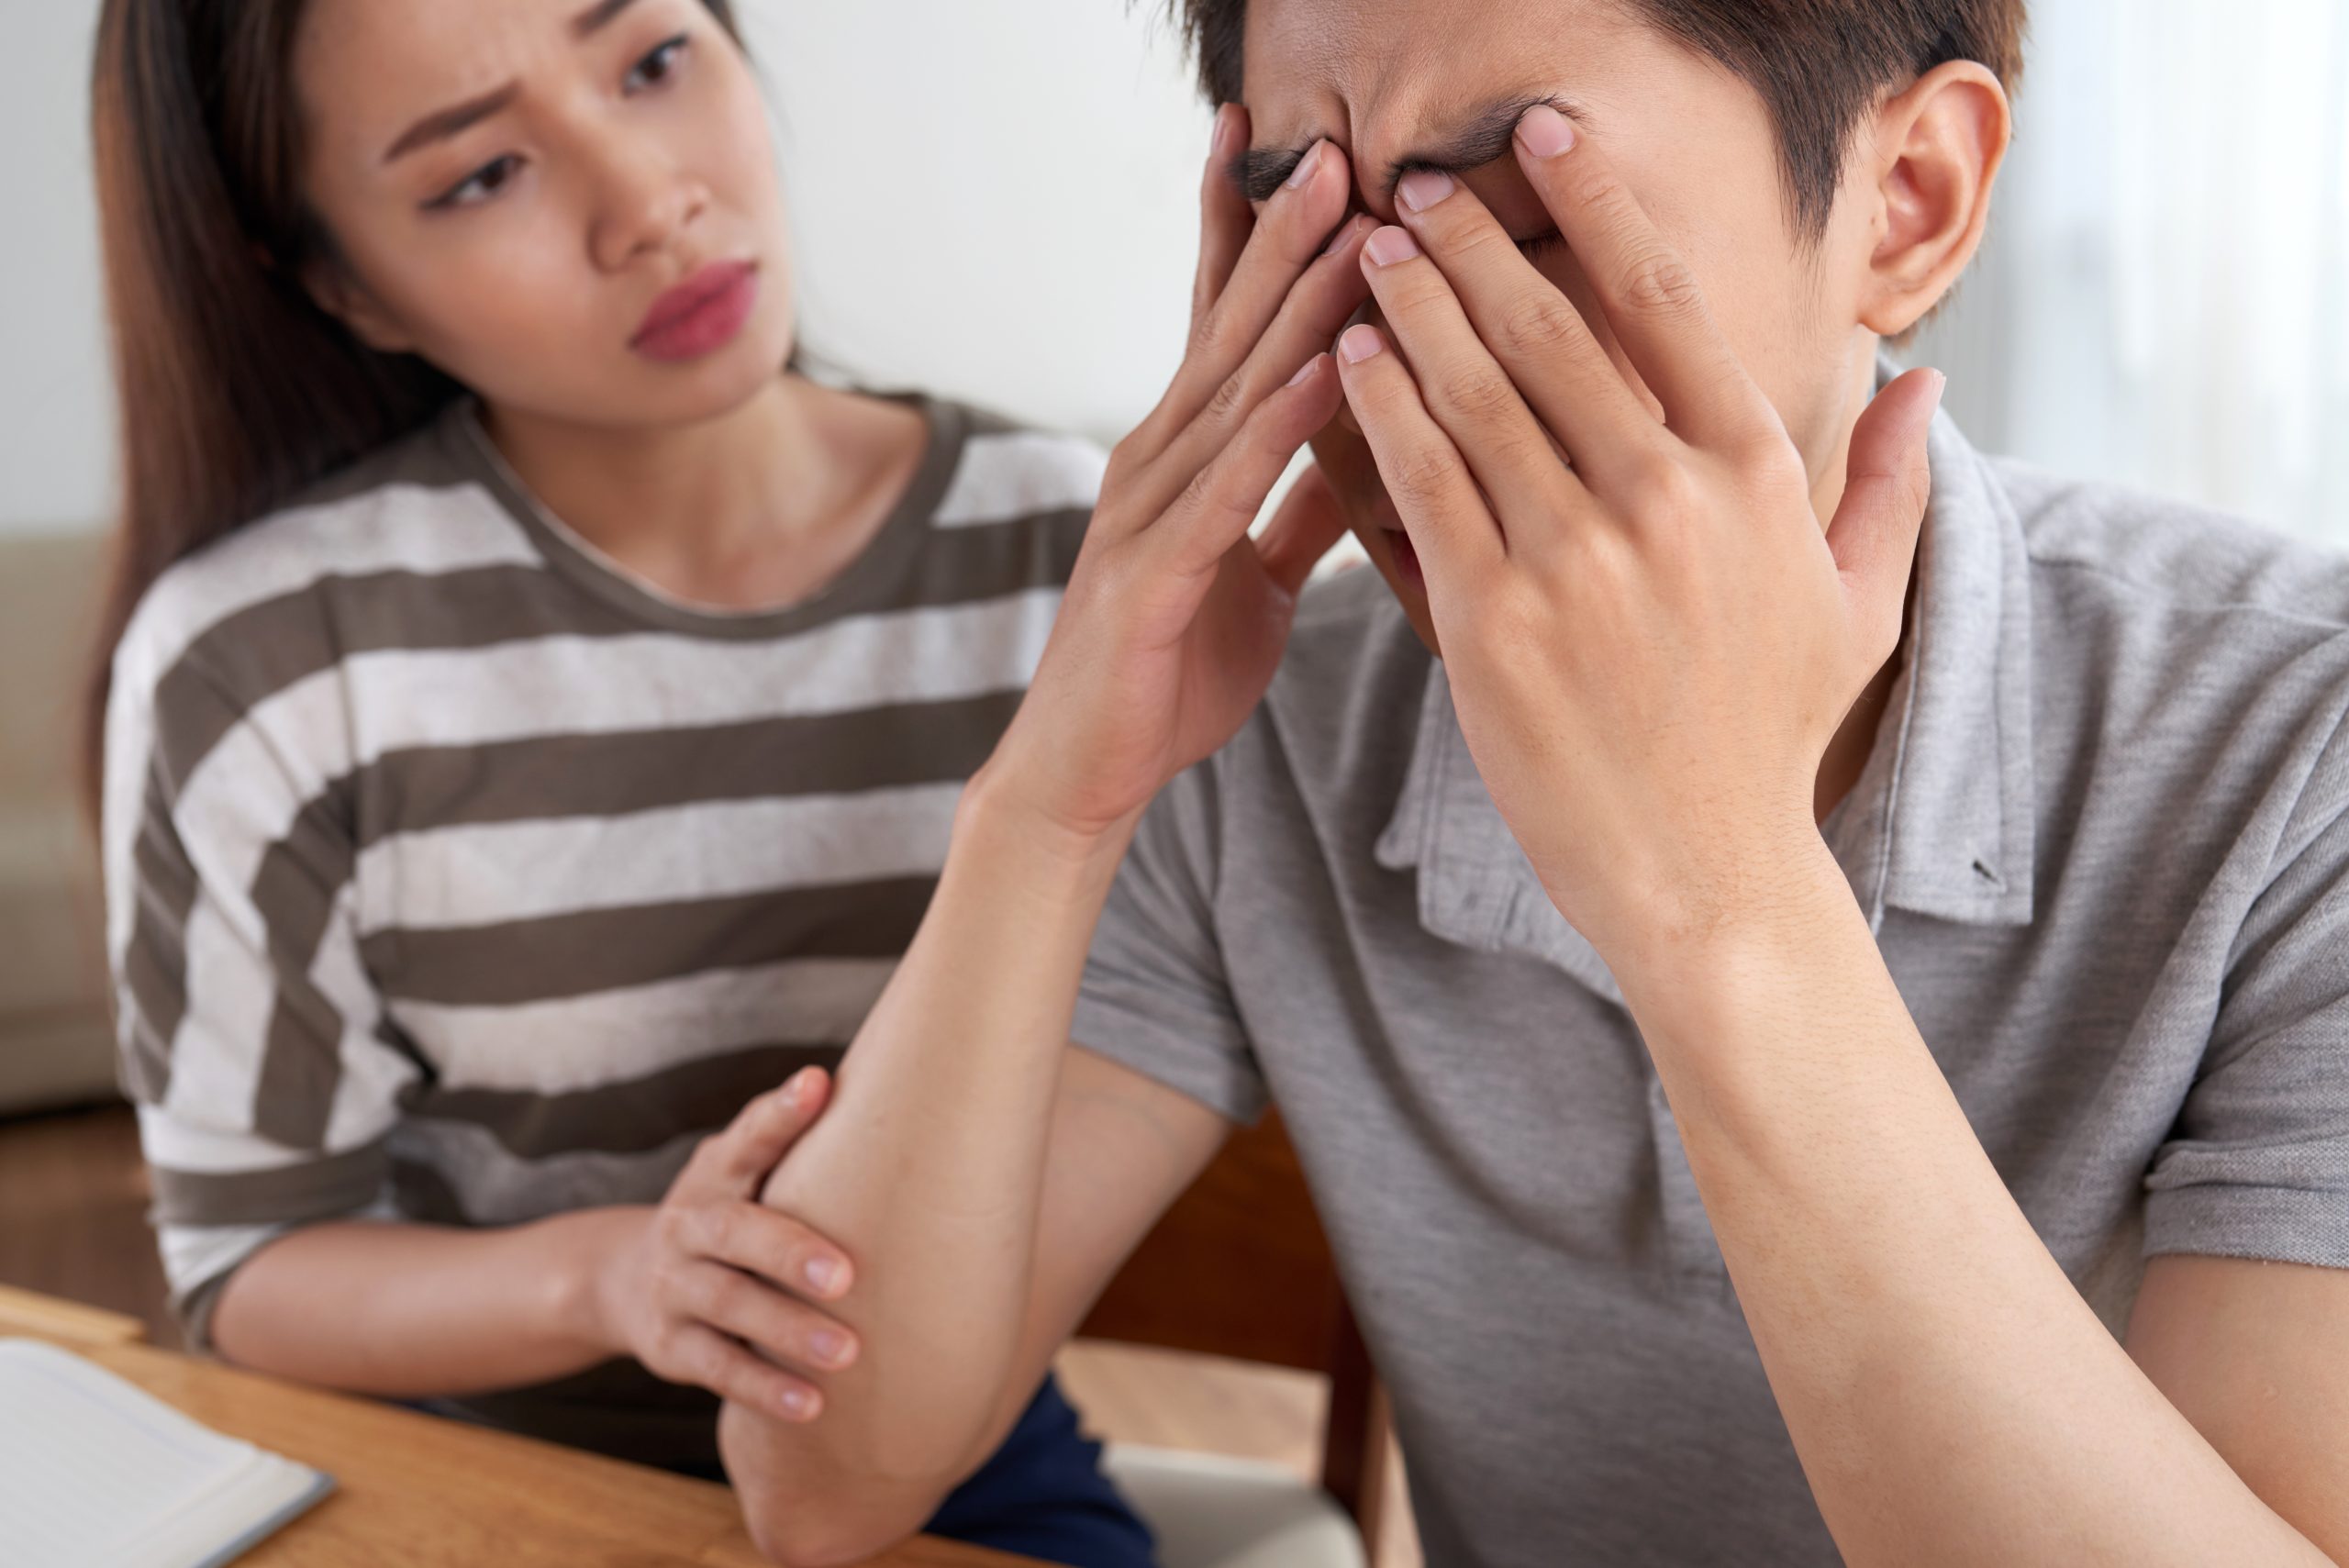 Relationship Burnout: Tanda, Penyebab & Cara Mengatasinya